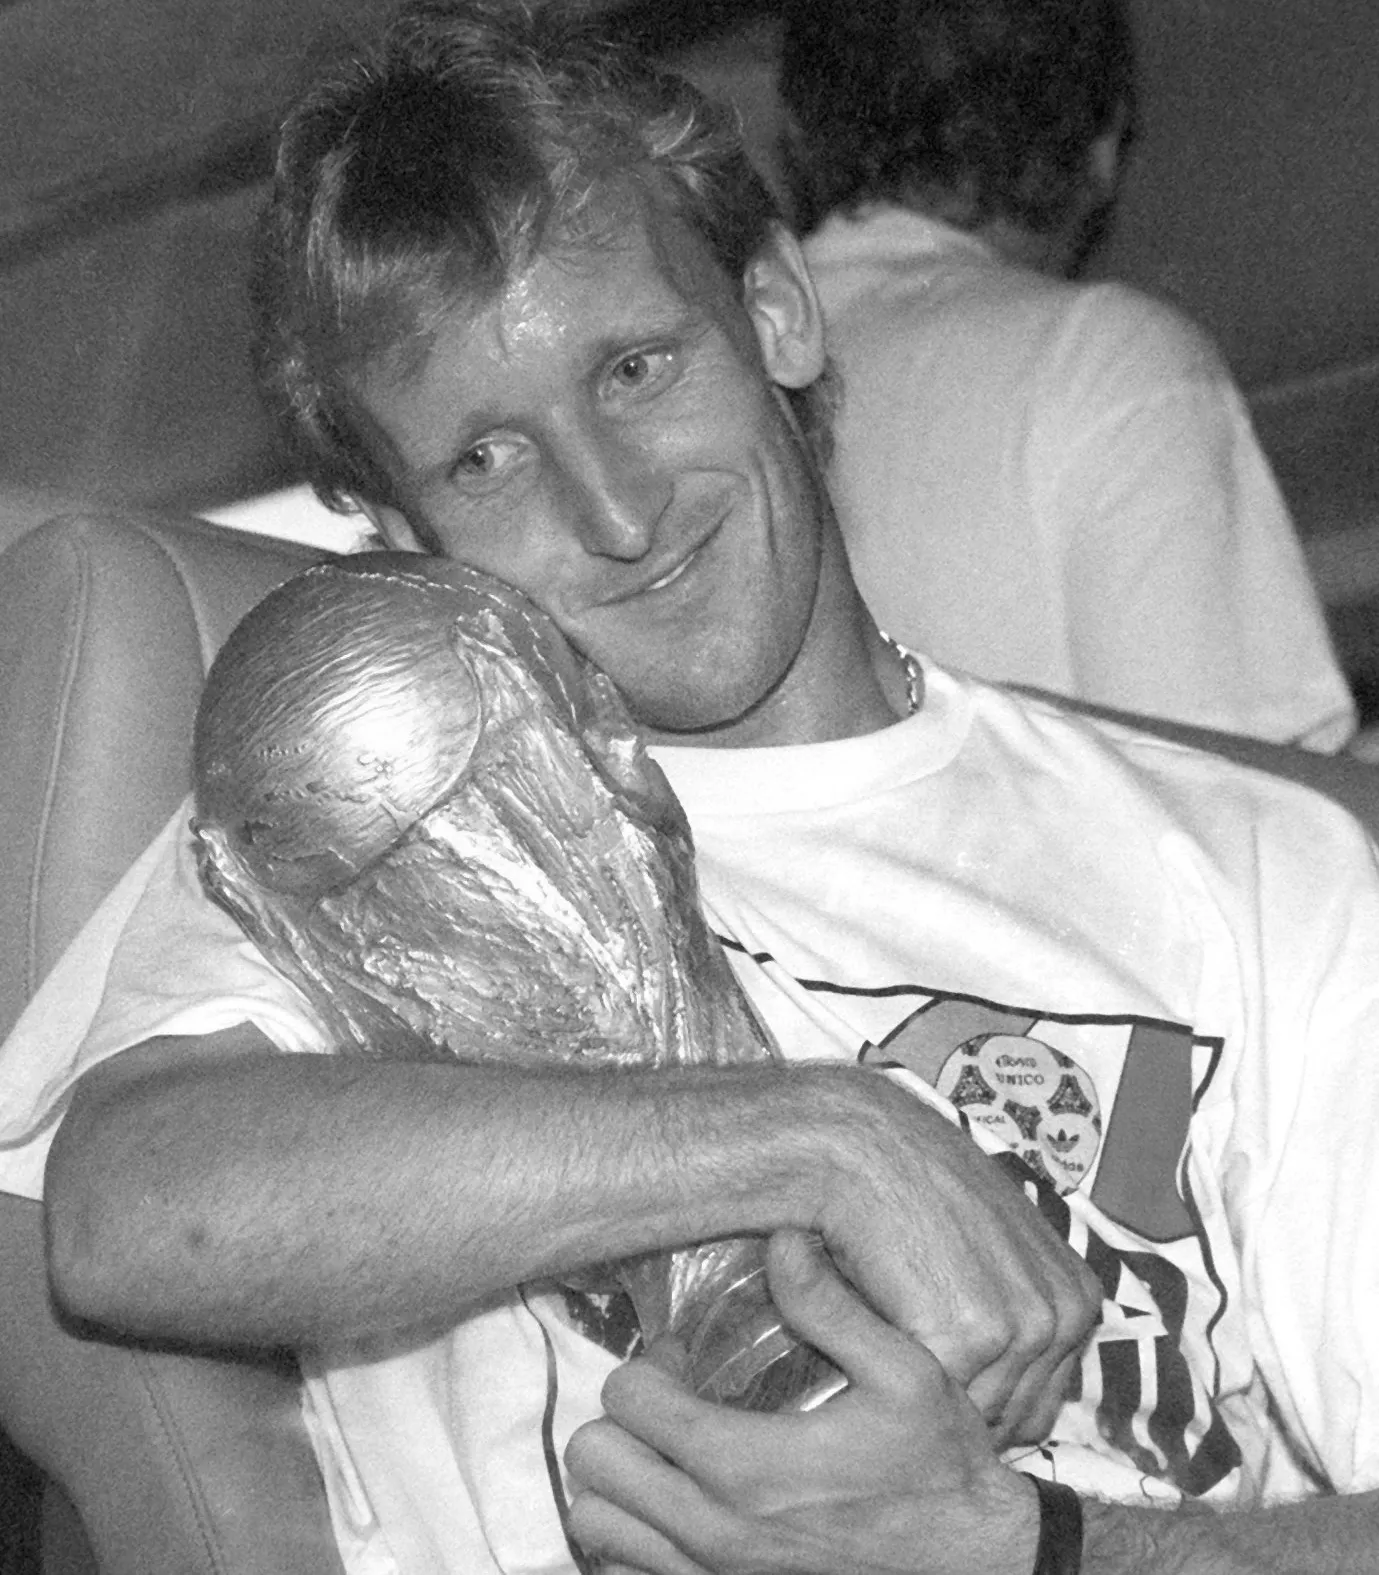 ARCHIV - 09.07.1990, Hessen, Frankfurt/Main: Andreas Brehme (l), damaliger deutscher Fußballnationalspieler, nimmt den WM-Pokal in den Arm